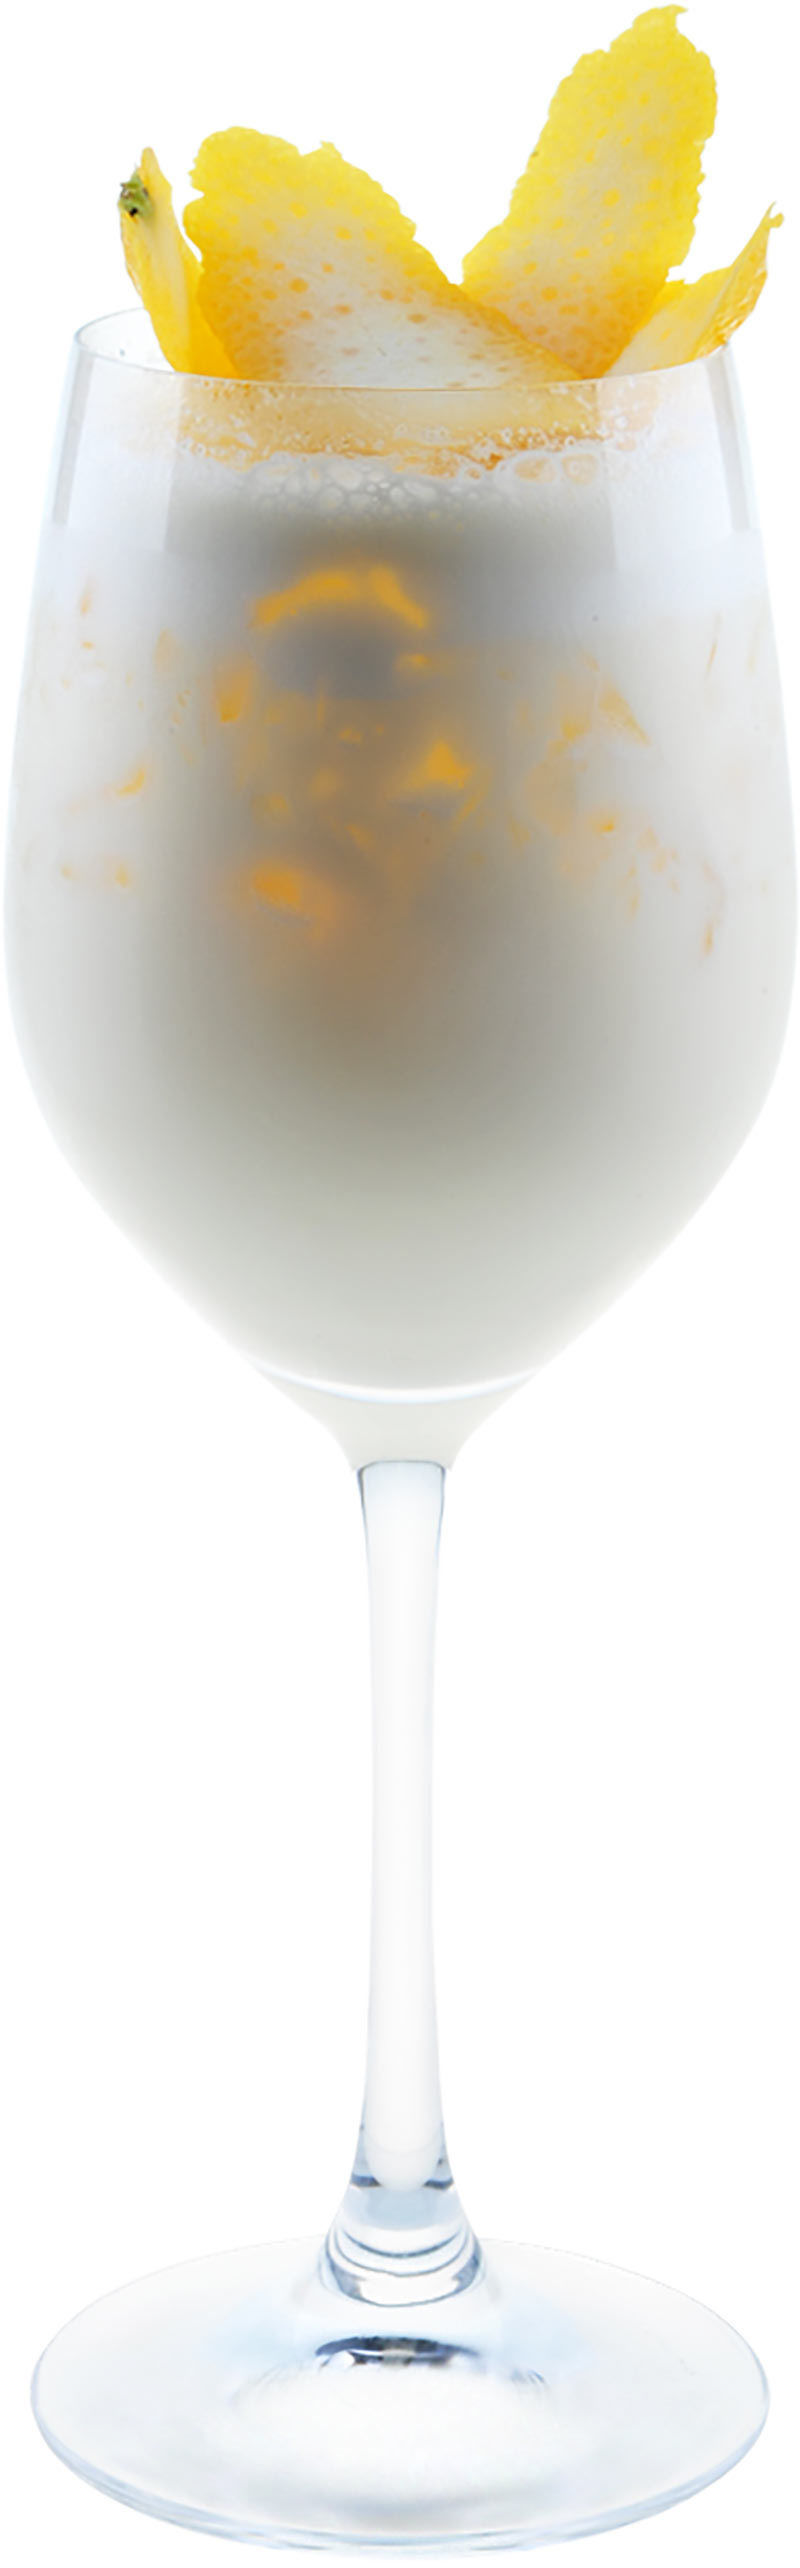 Рецепт коктейля Молочный виски пунш